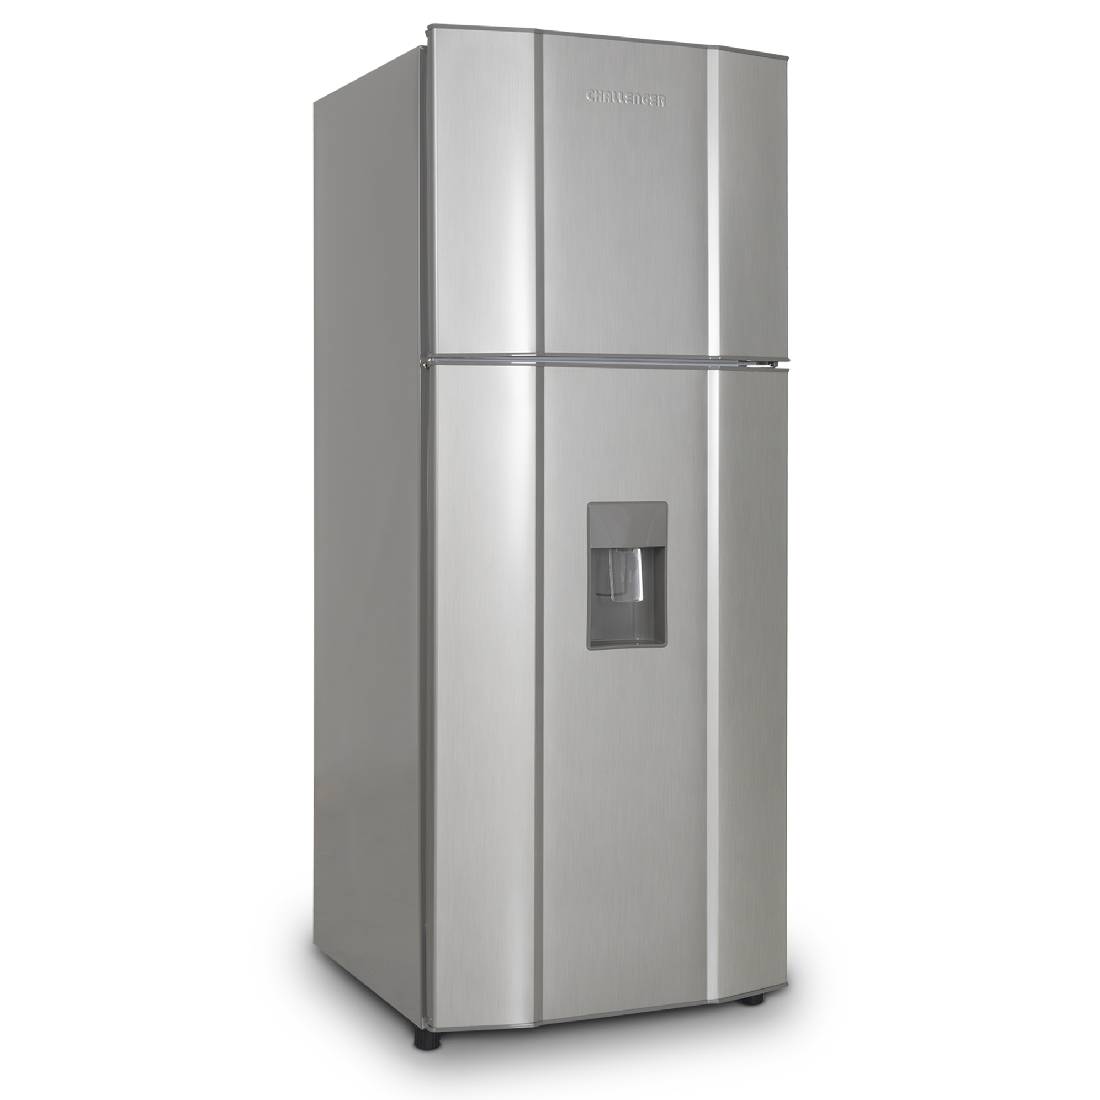 Refrigeradora CHALLENGER CR372 No Frost Gris sin Acrílico 250 Litros